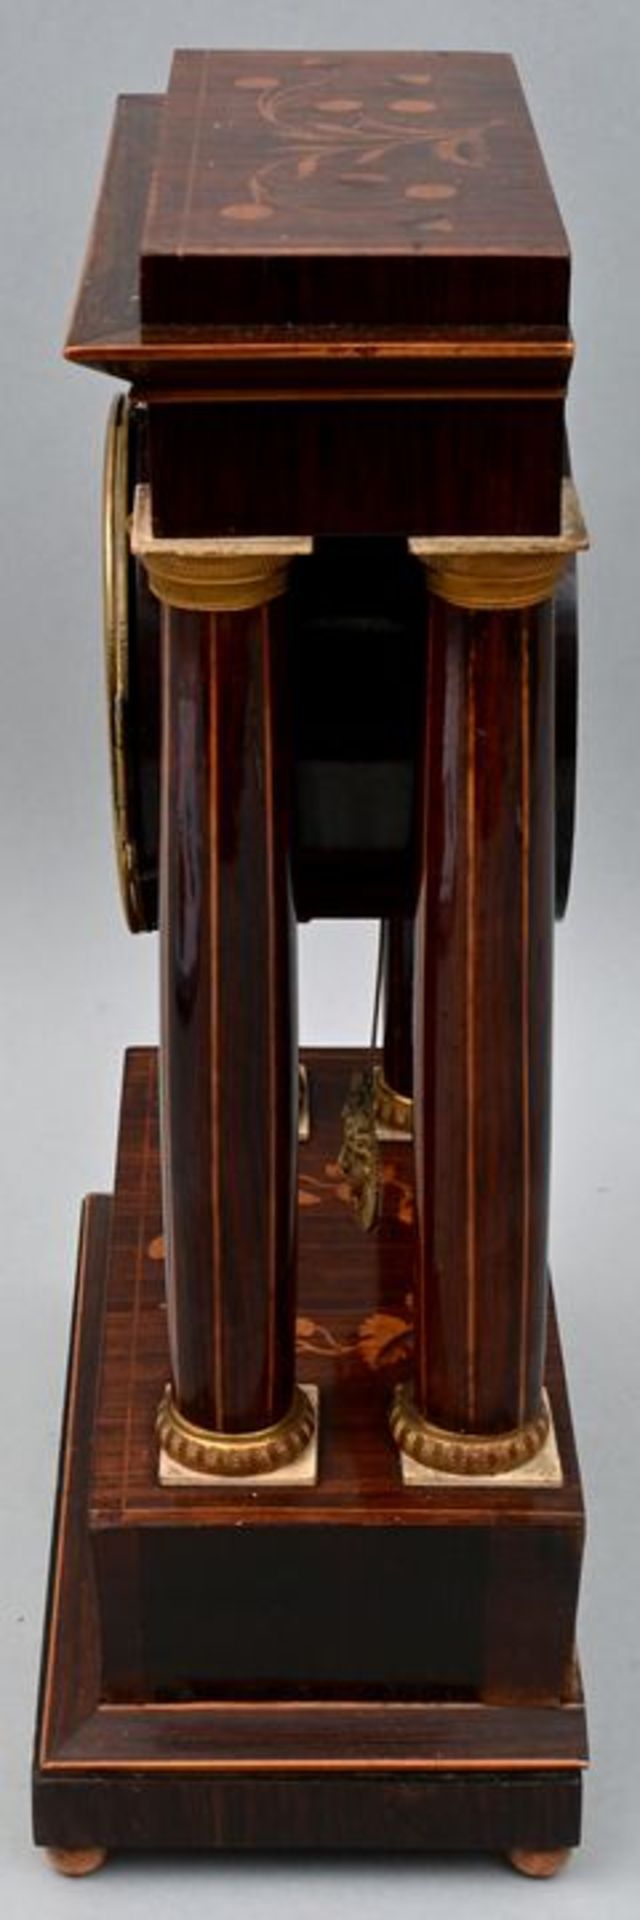 Stutzuhr Franz Liszt, Wien / mantel clock - Bild 5 aus 7